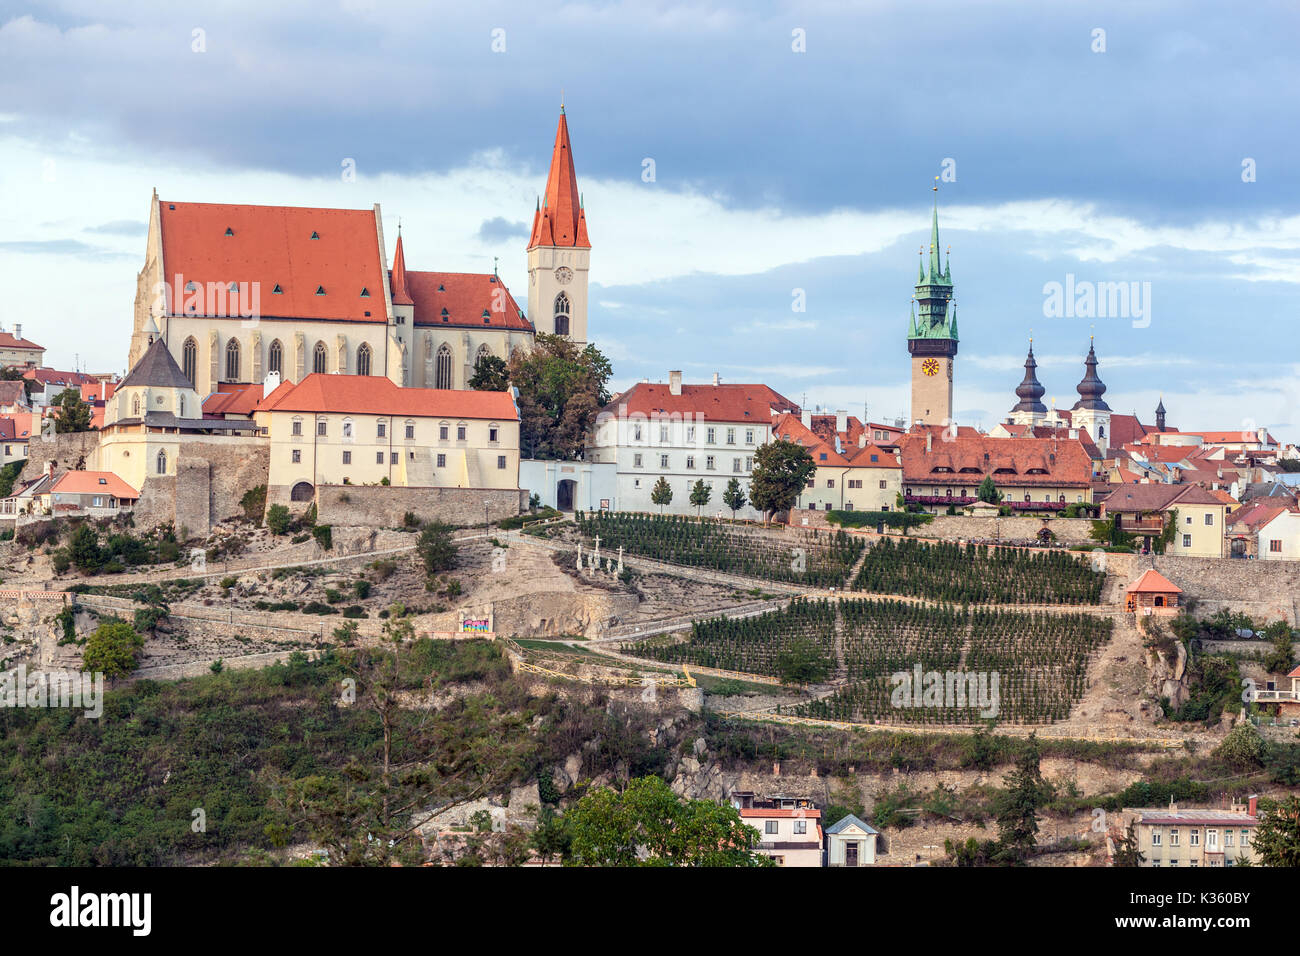 Znojmo, Tschechien, St. Nicholas Kirche und alte historische Stadt